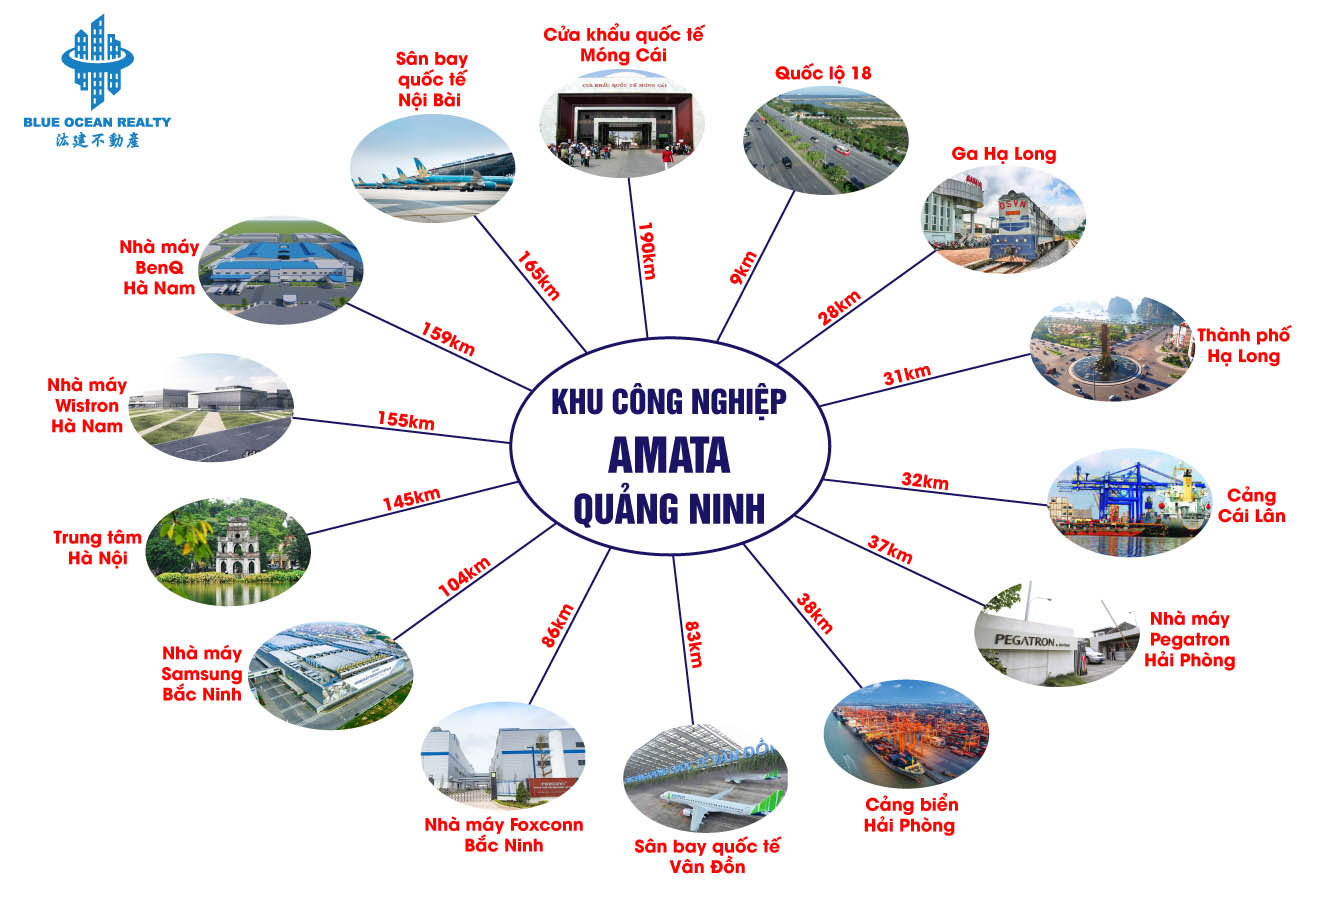 Khu công nghiệp (KCN) Amata tỉnh Quảng Ninh